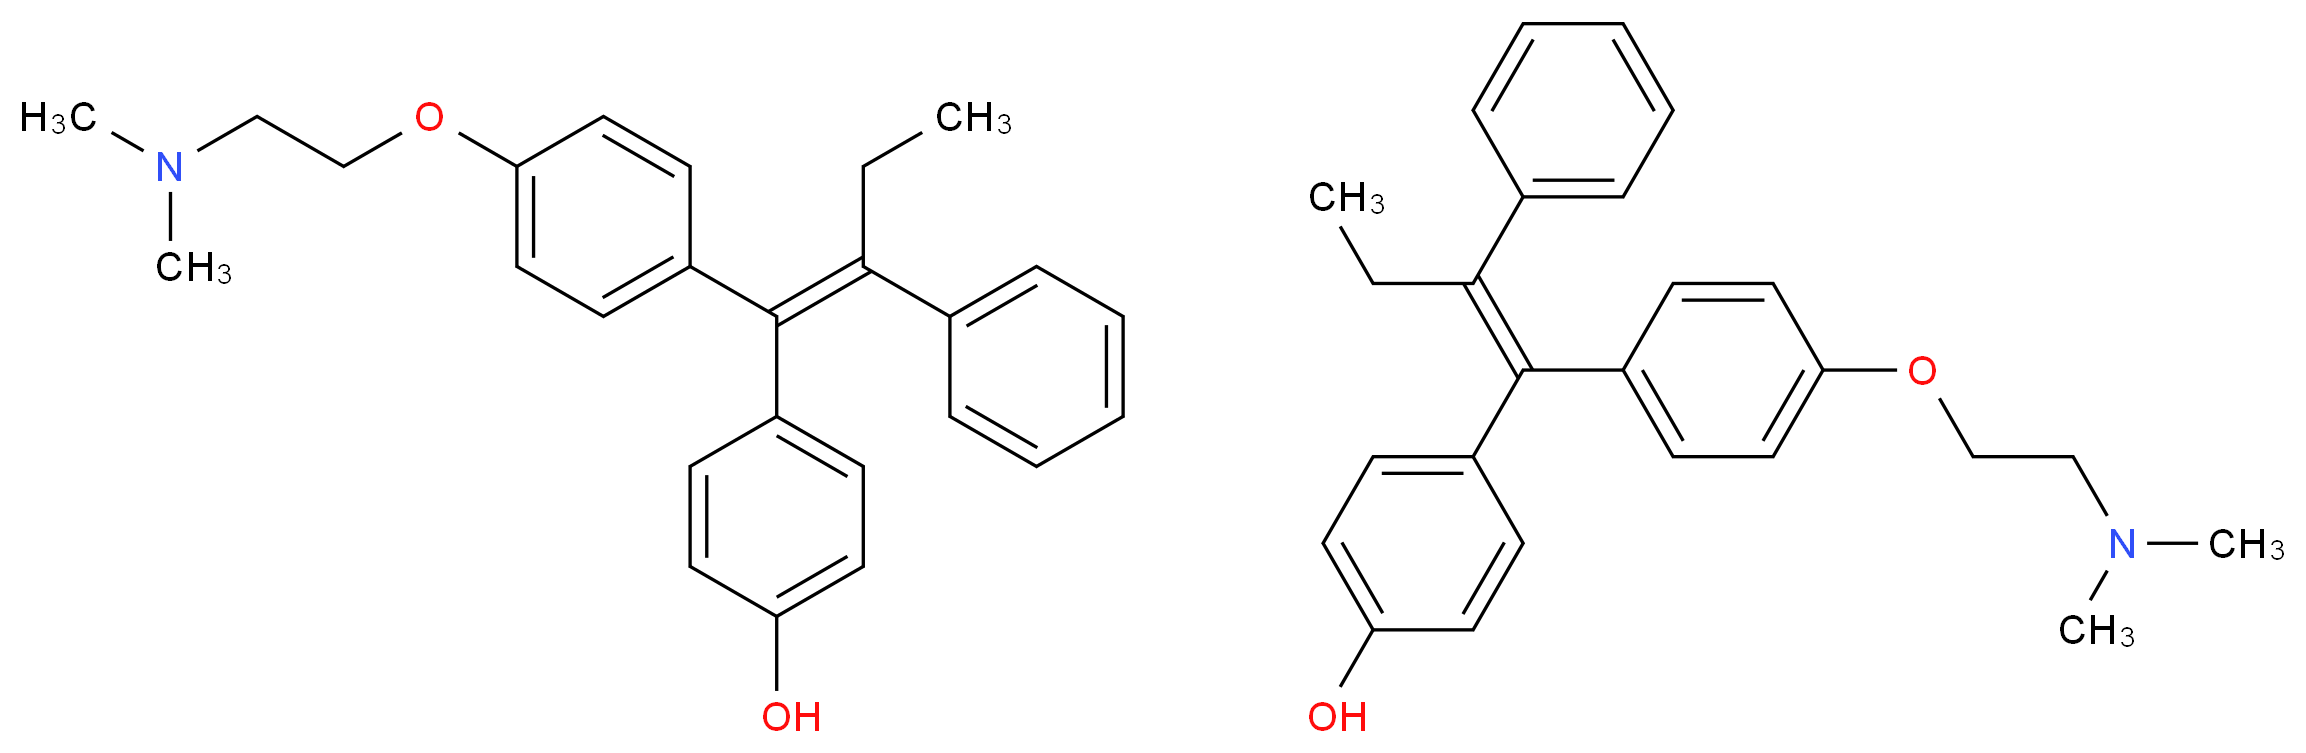 4-Hydroxytamoxifen_Molecular_structure_CAS_68392-35-8)